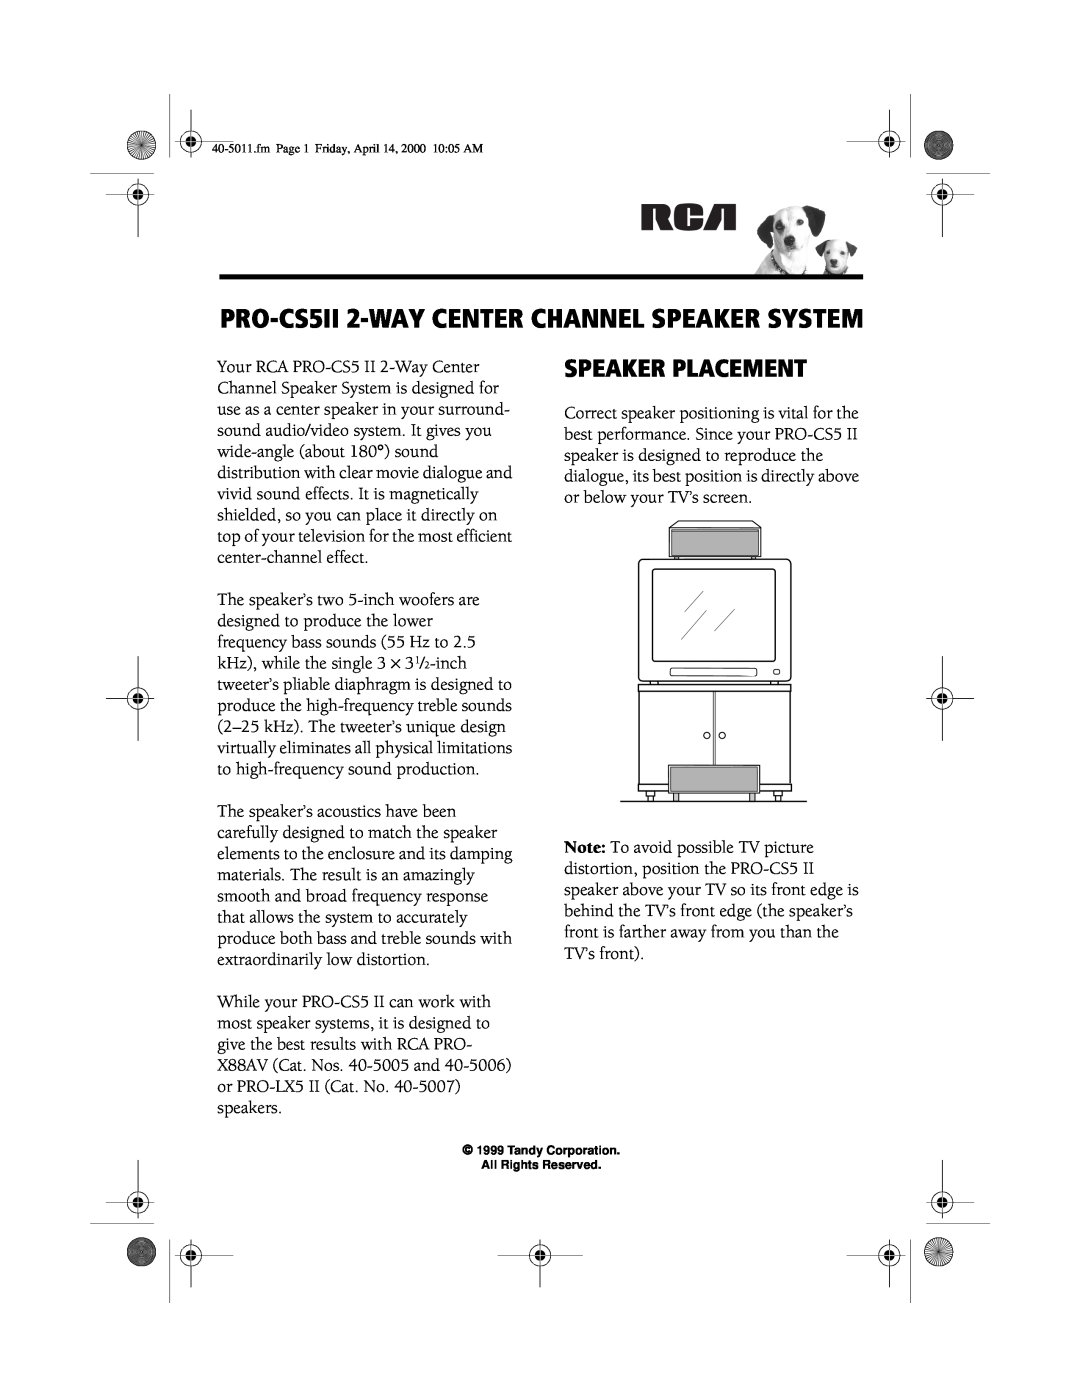 RCA manual Speaker Placement, PRO-CS5II 2-WAYCENTER CHANNEL SPEAKER SYSTEM 